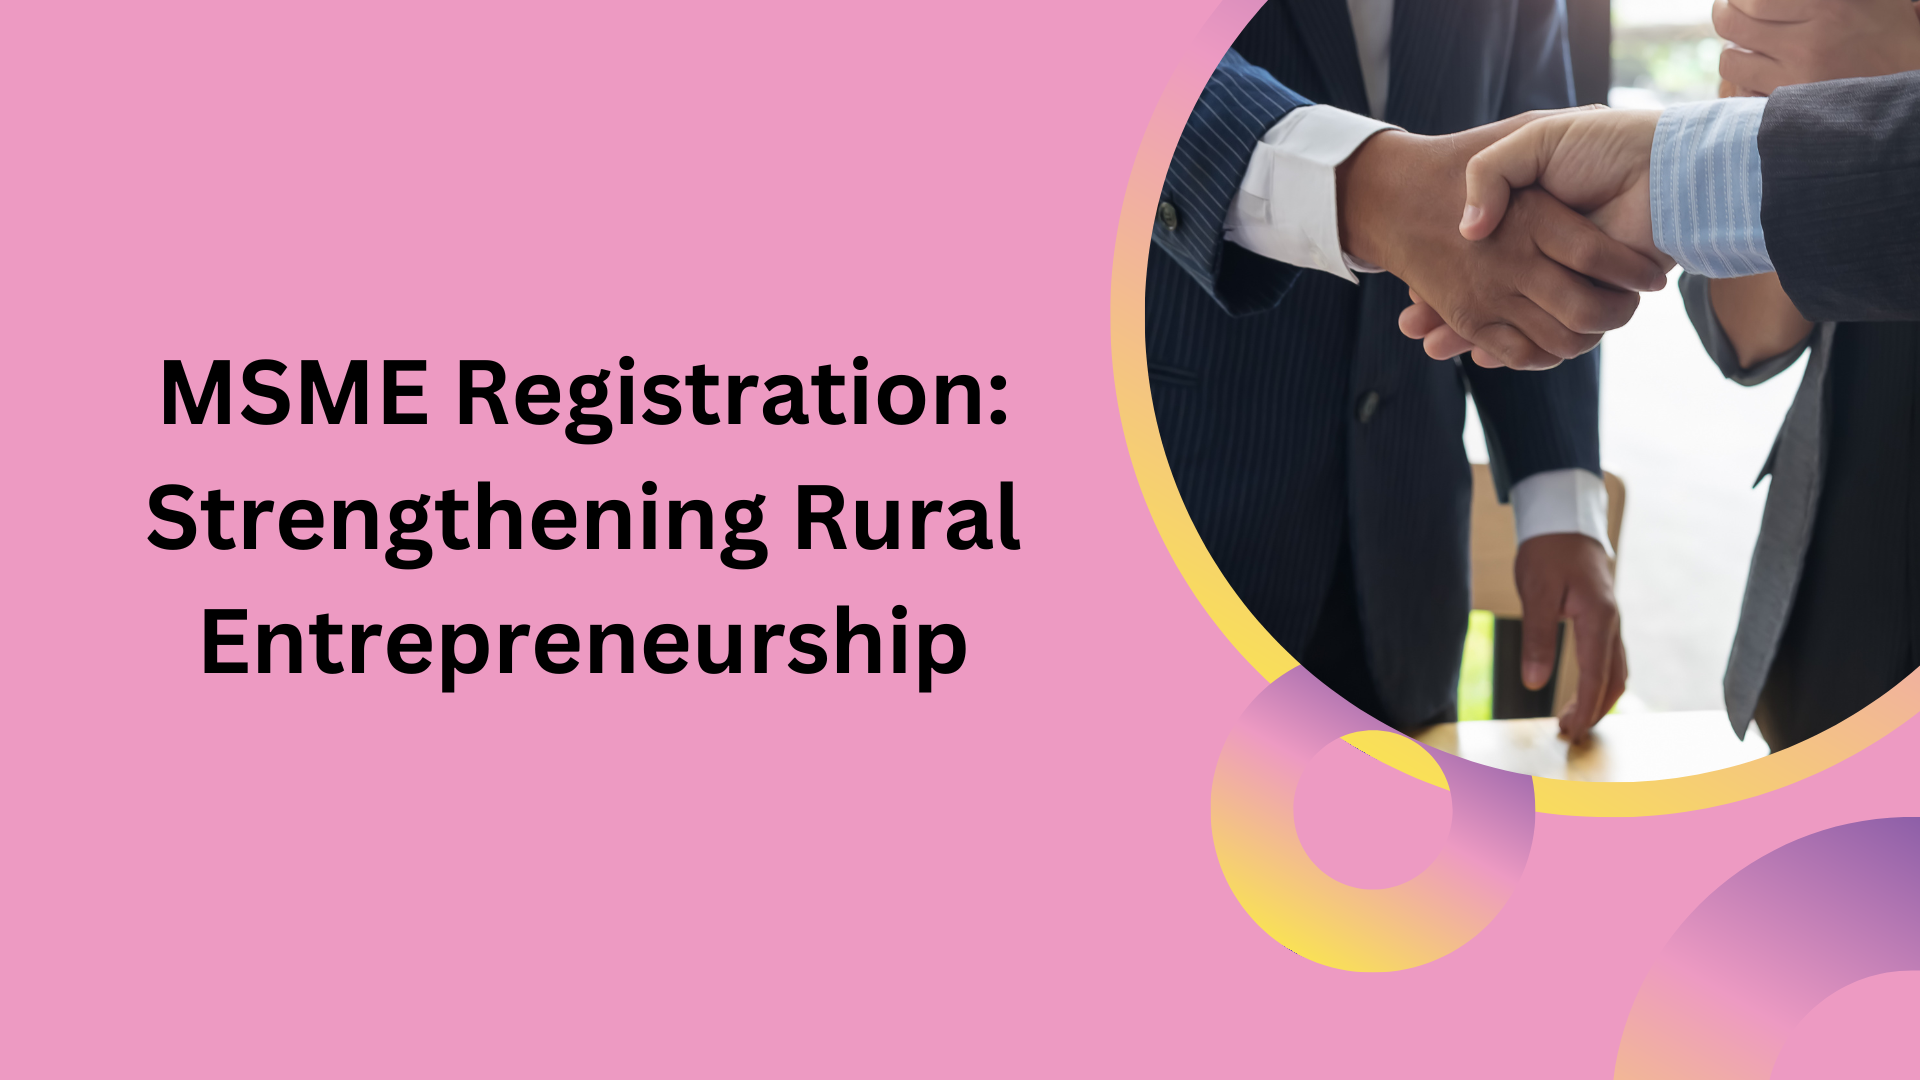 MSME Registration: Strengthening Rural Entrepreneurship